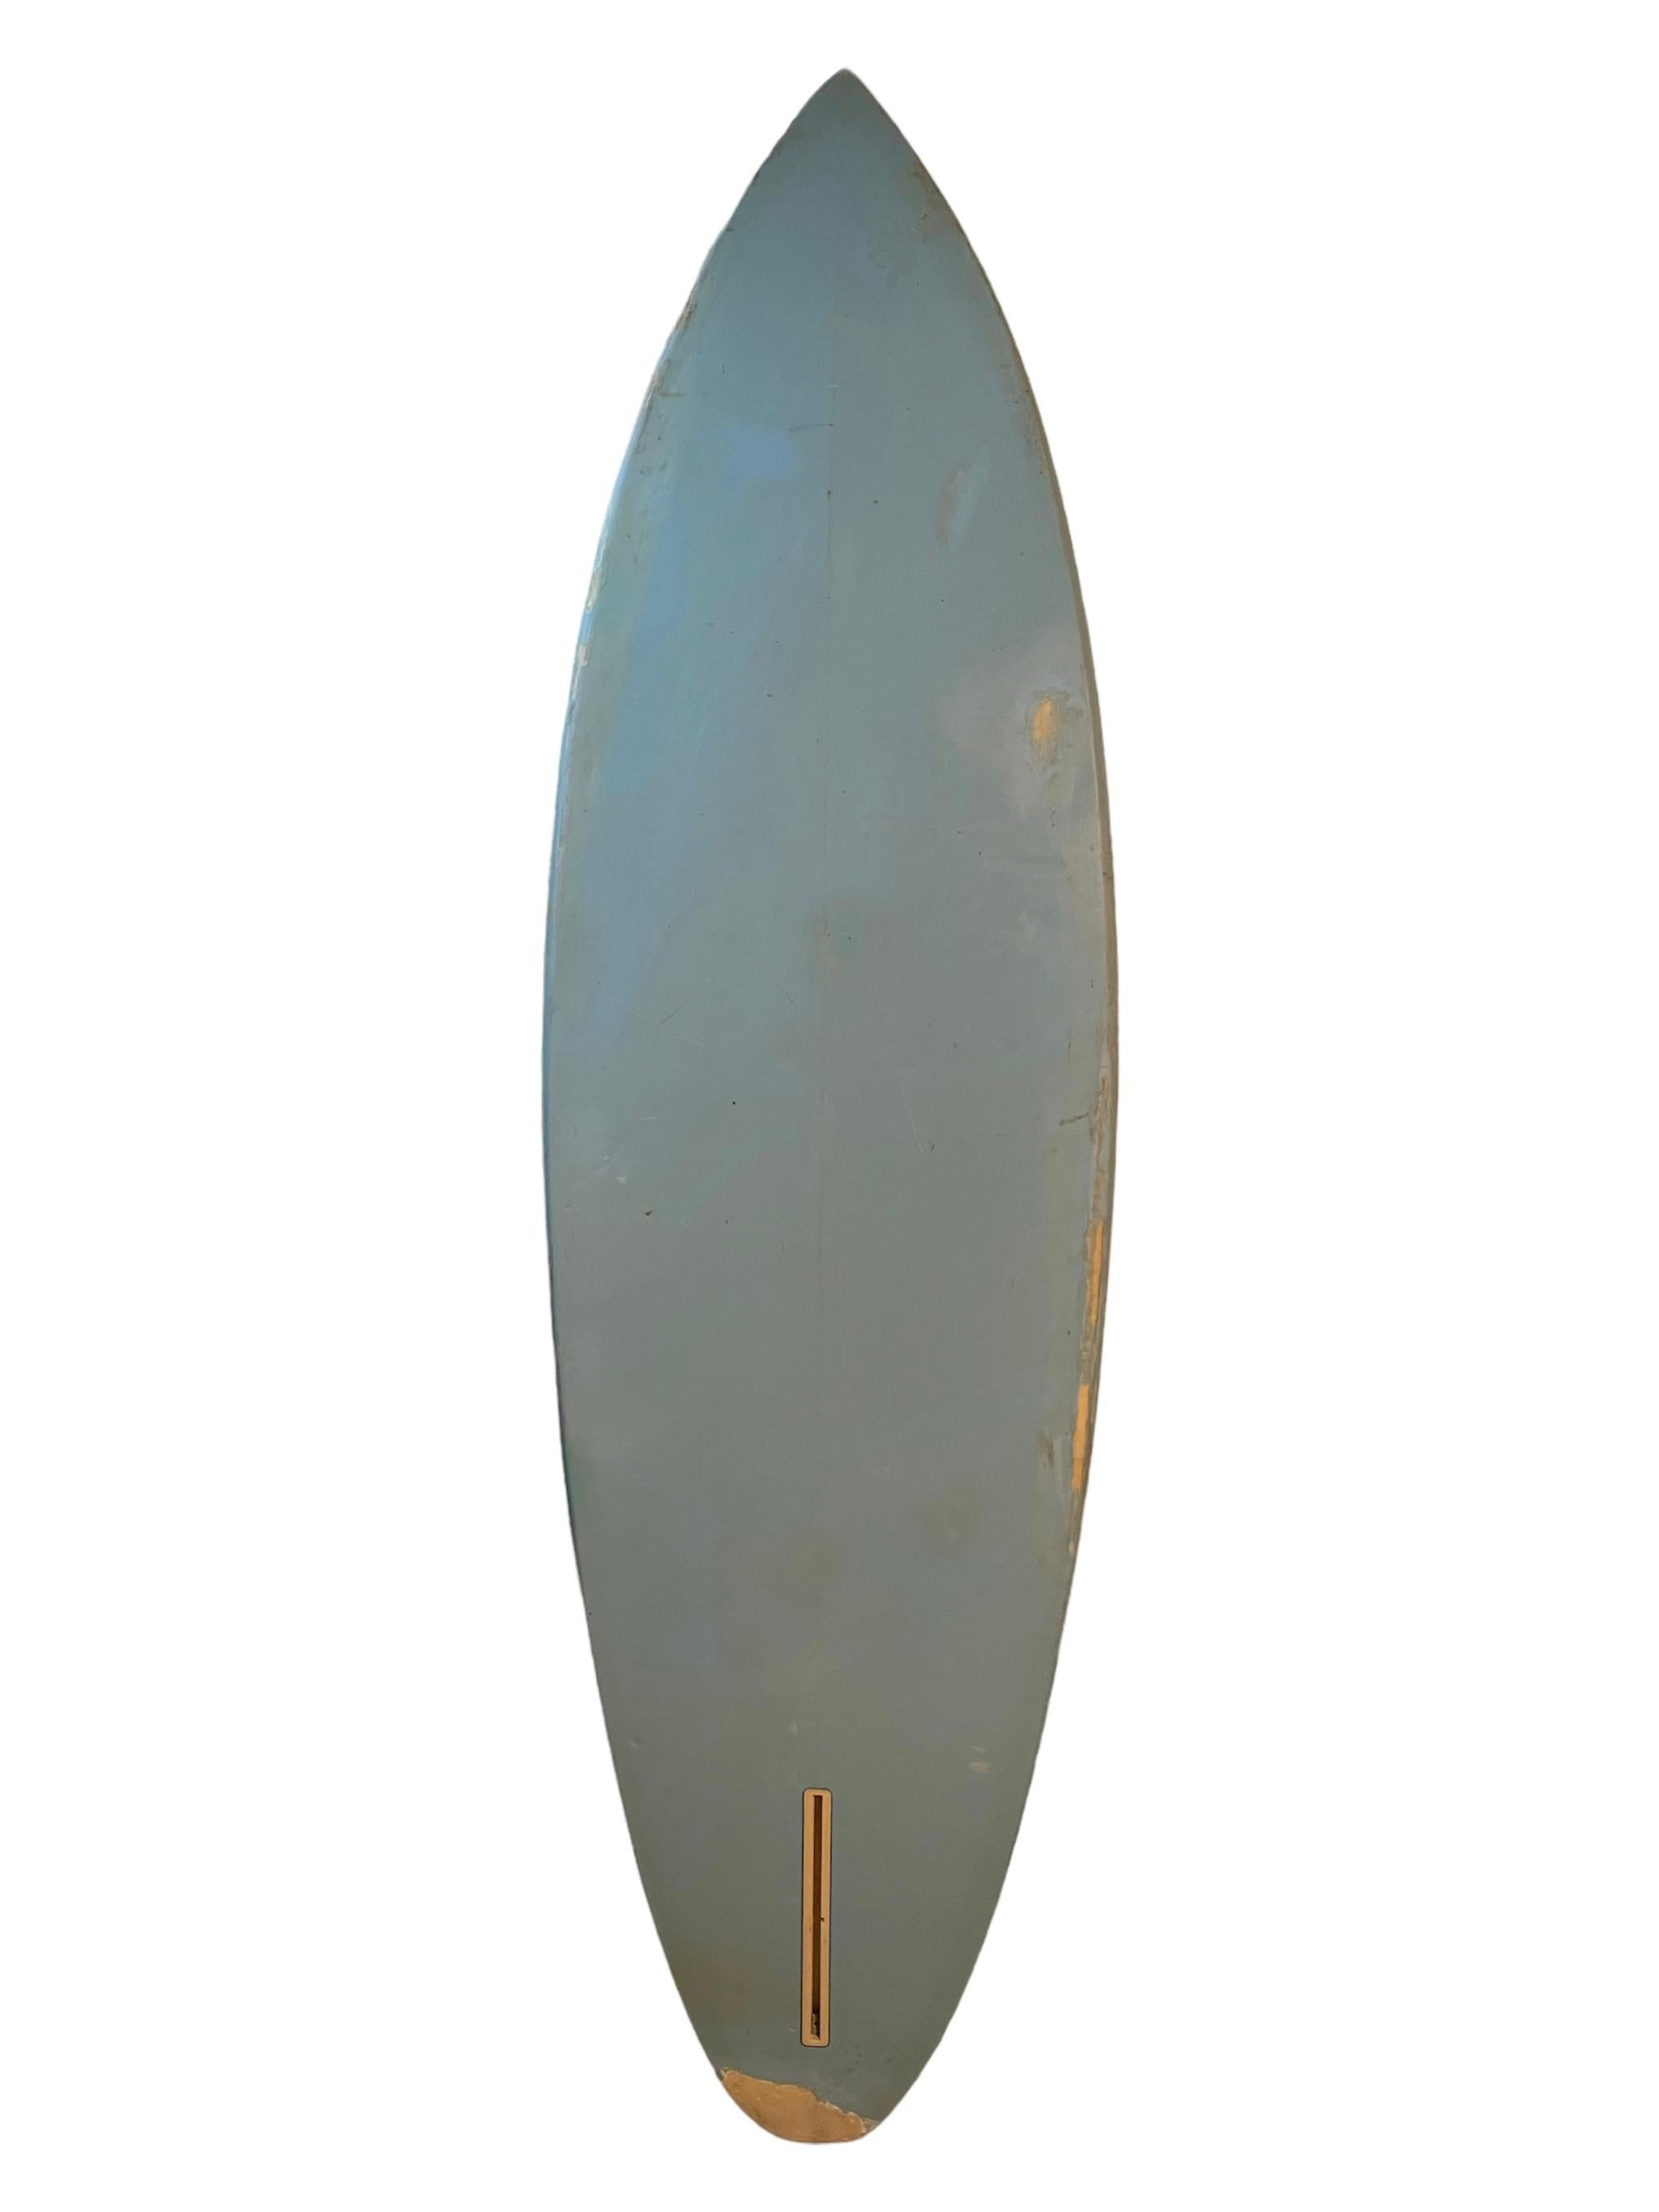 Vintage 1970s Ocean Pacific (Op) Welle Wandbild Surfbrett. Atemberaubendes Airbrush-Kunstwerk, das ein nächtliches Wellen-Wandbild darstellt. Abgerundetes Design in Form eines Pintails. Ein schönes Beispiel für ein originales Airbrush-Kunstwerk auf